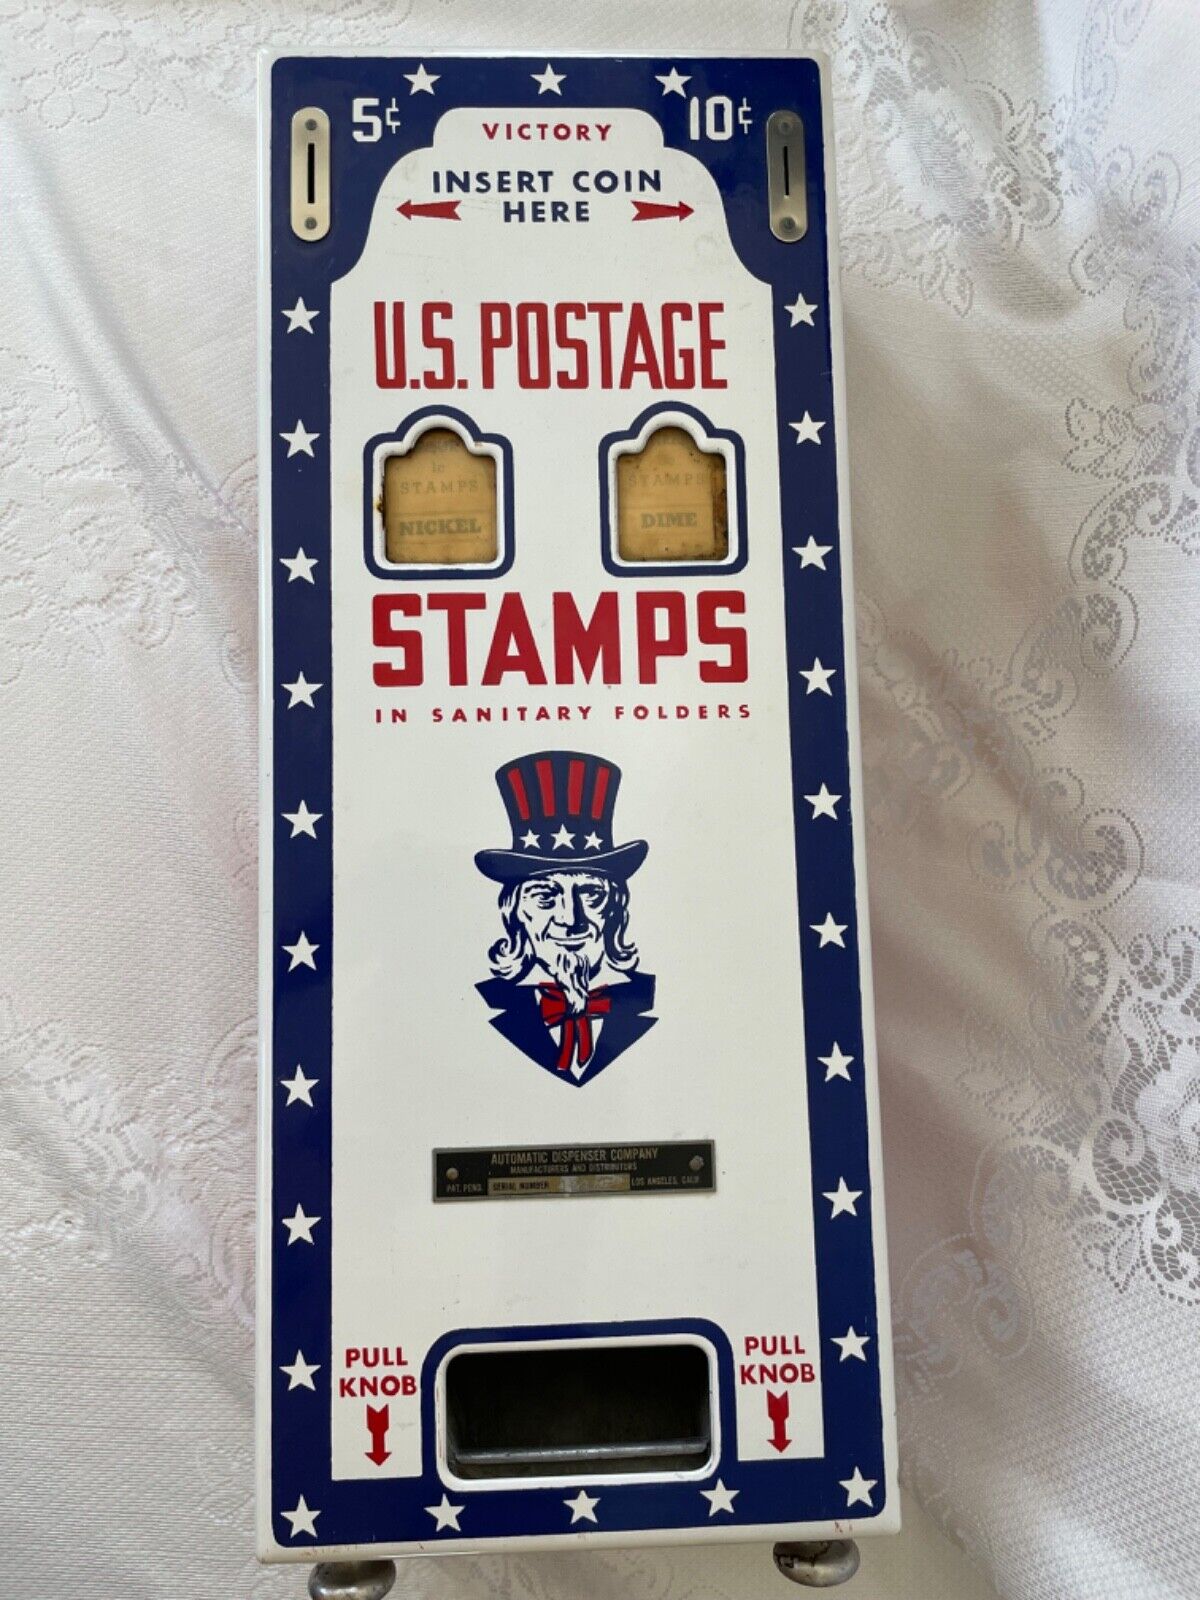 Vintage 1950s Porcelain US Postage Stamp Vending Machine with Uncle Sam